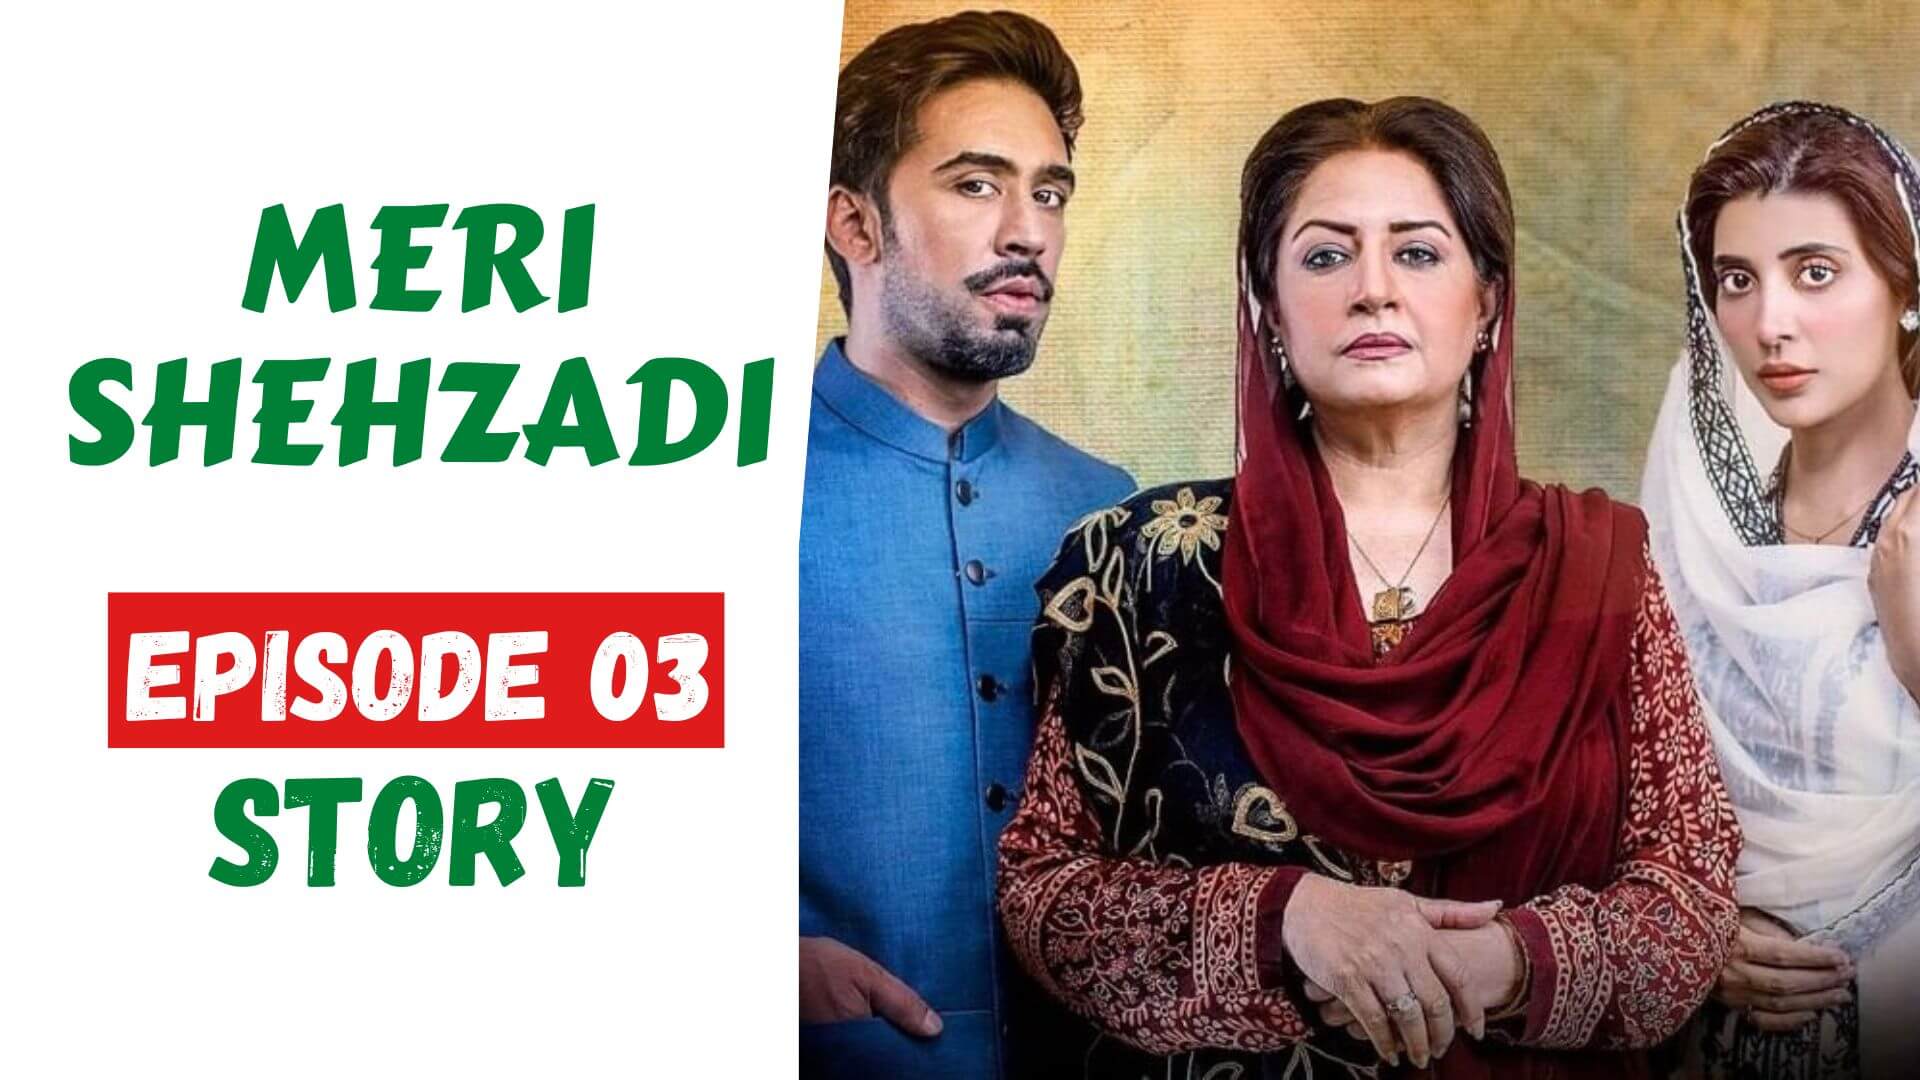 Meri Shehzadi Episode 03 Story